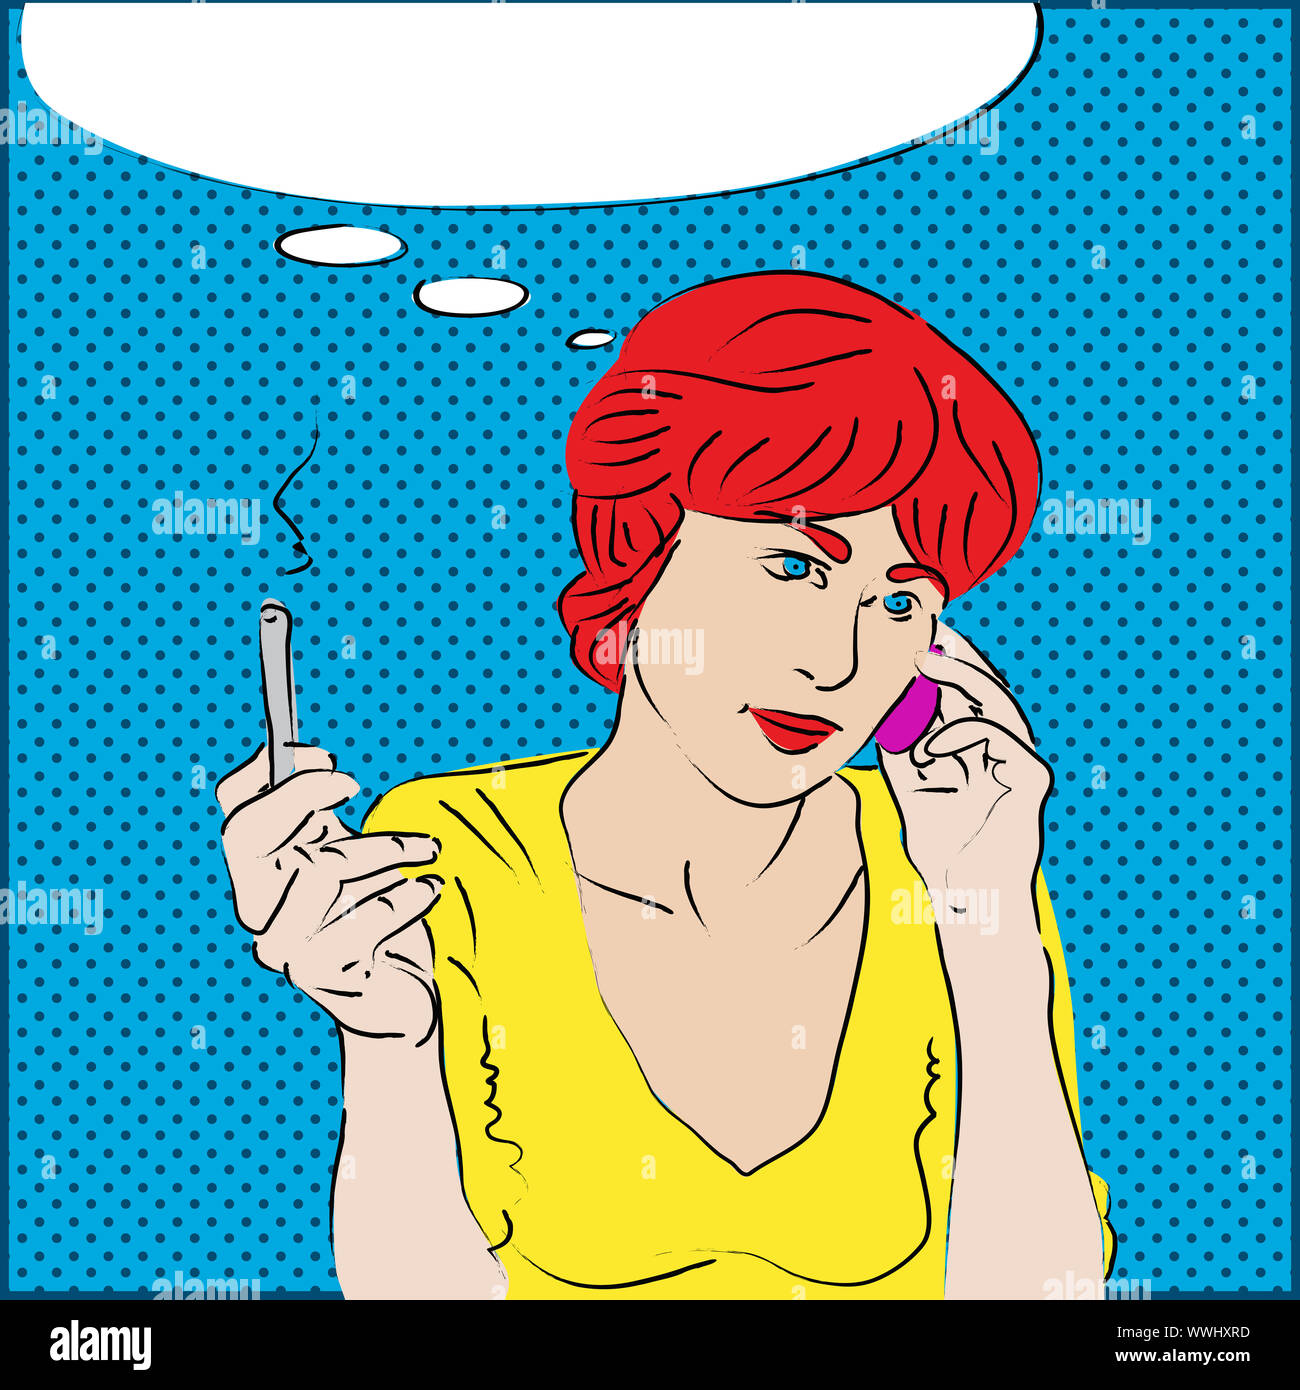 Un estilo pop art retrato de una niña de cabeza roja hablando por el teléfono y el hábito de fumar Foto de stock